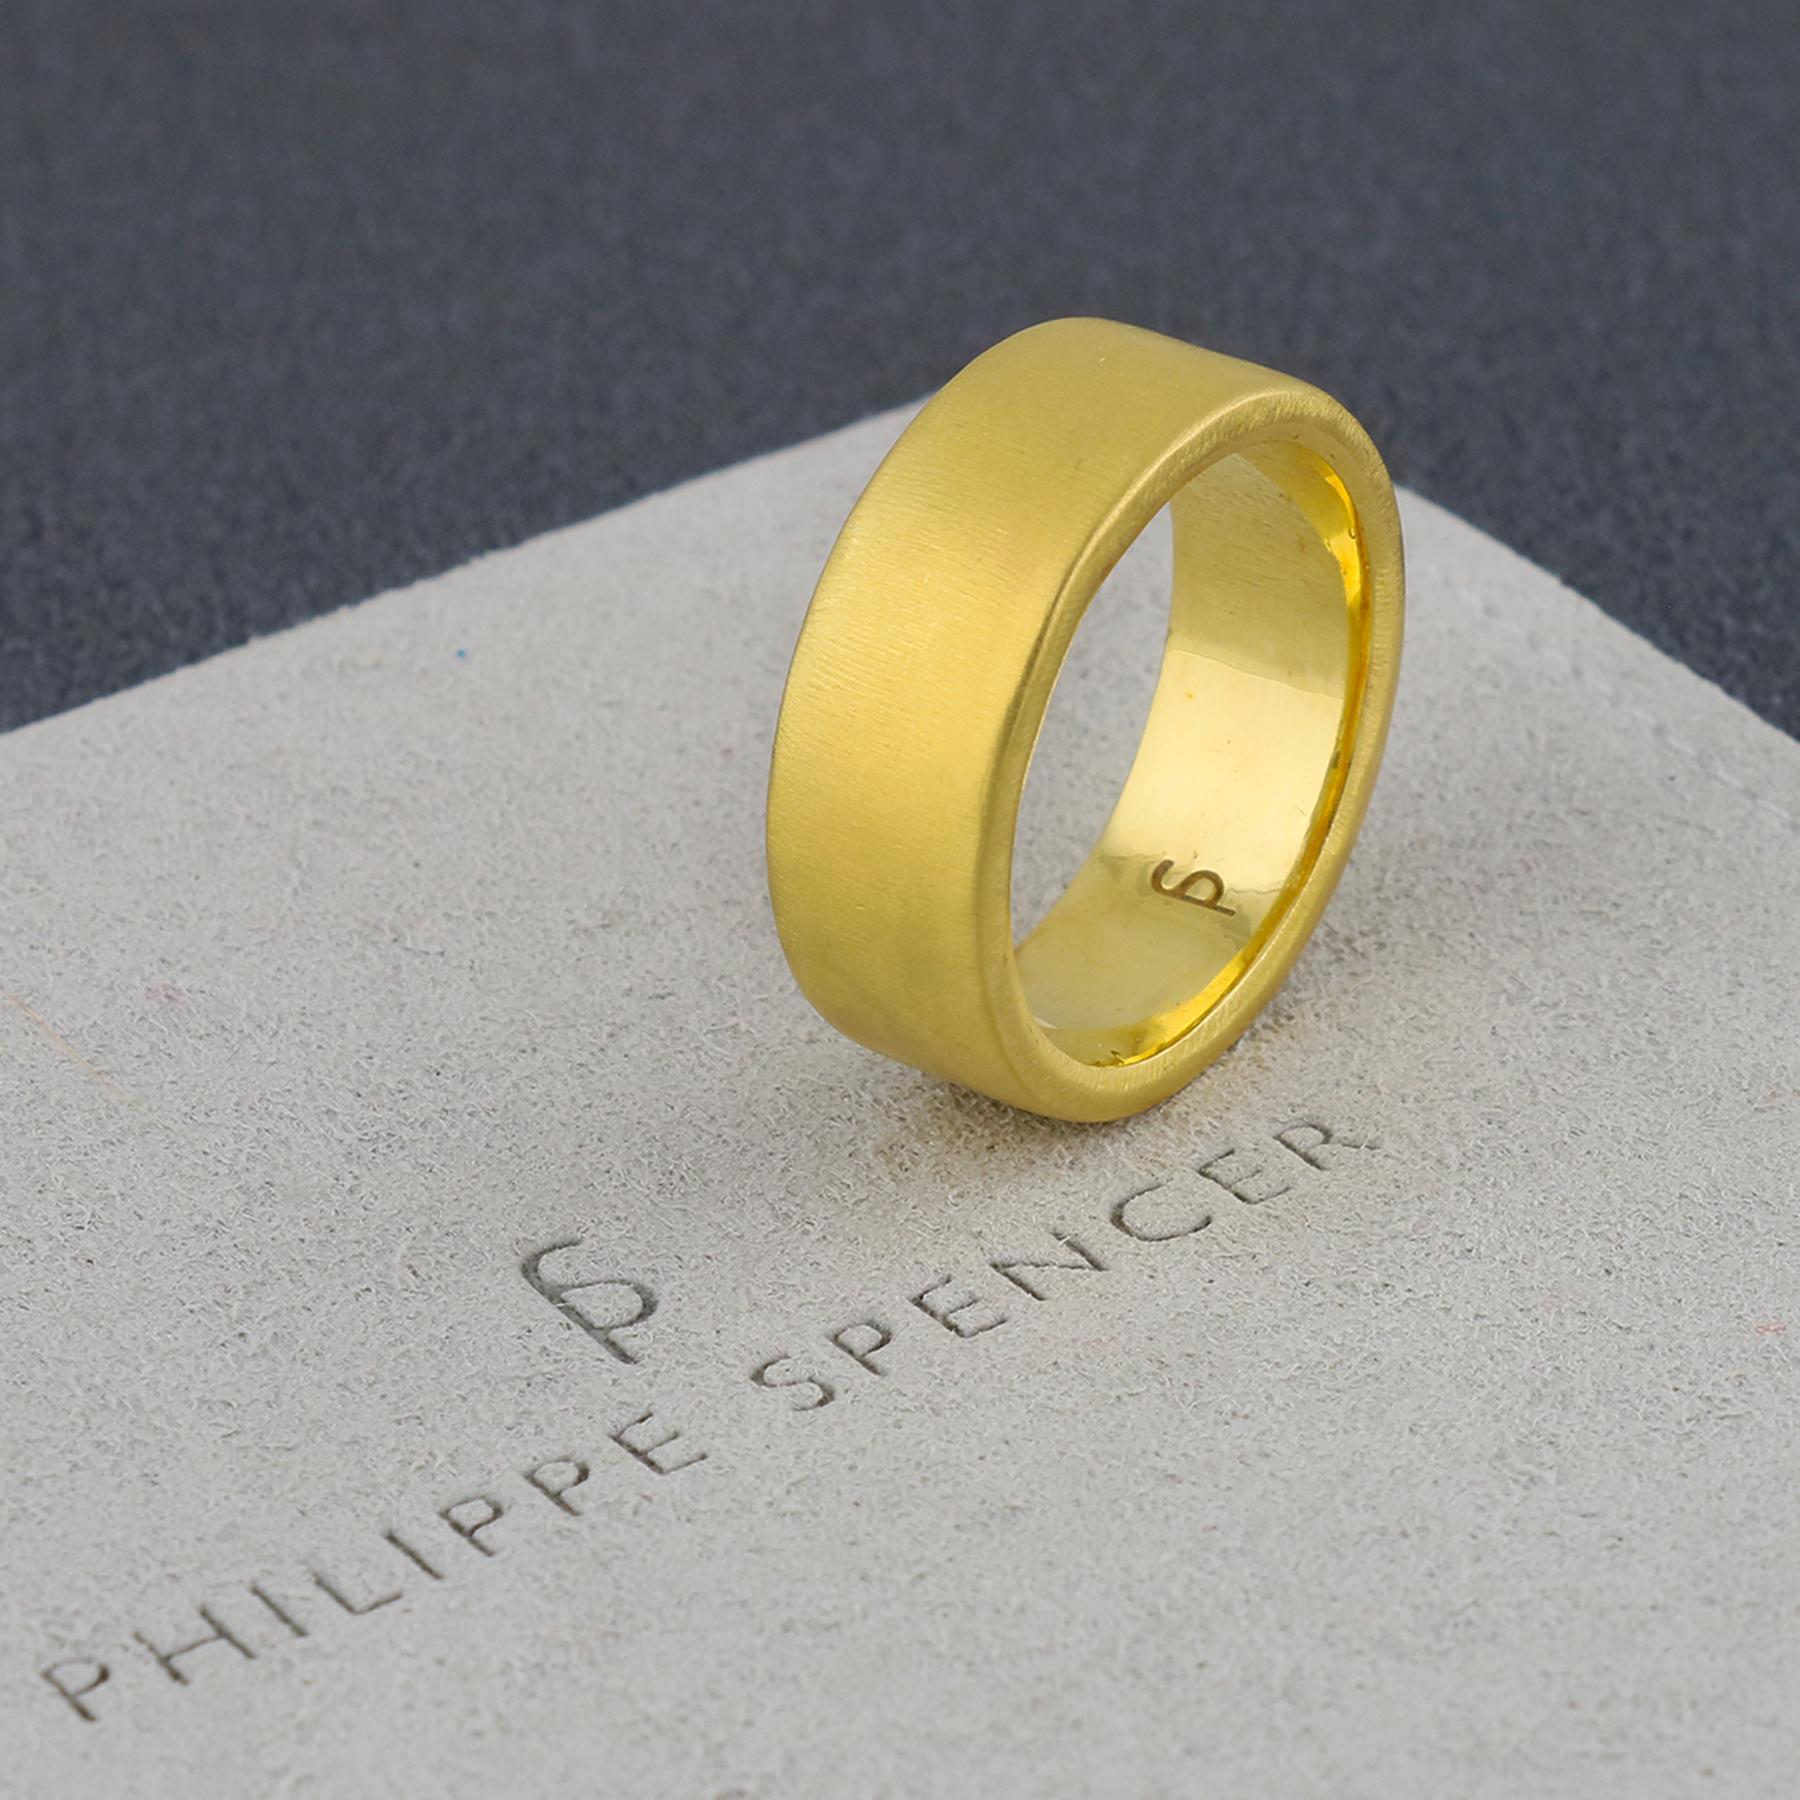 PHILIPPE-SPENCER - Bracelet en or massif 20K de 8 x 2 mm, forgé à la main. Extérieur fortement mat, intérieur poli miroir.  Chaque bracelet est une œuvre d'art unique. Ce bracelet PHILIPPE SPENCER en or massif 20 carats fait à la main est